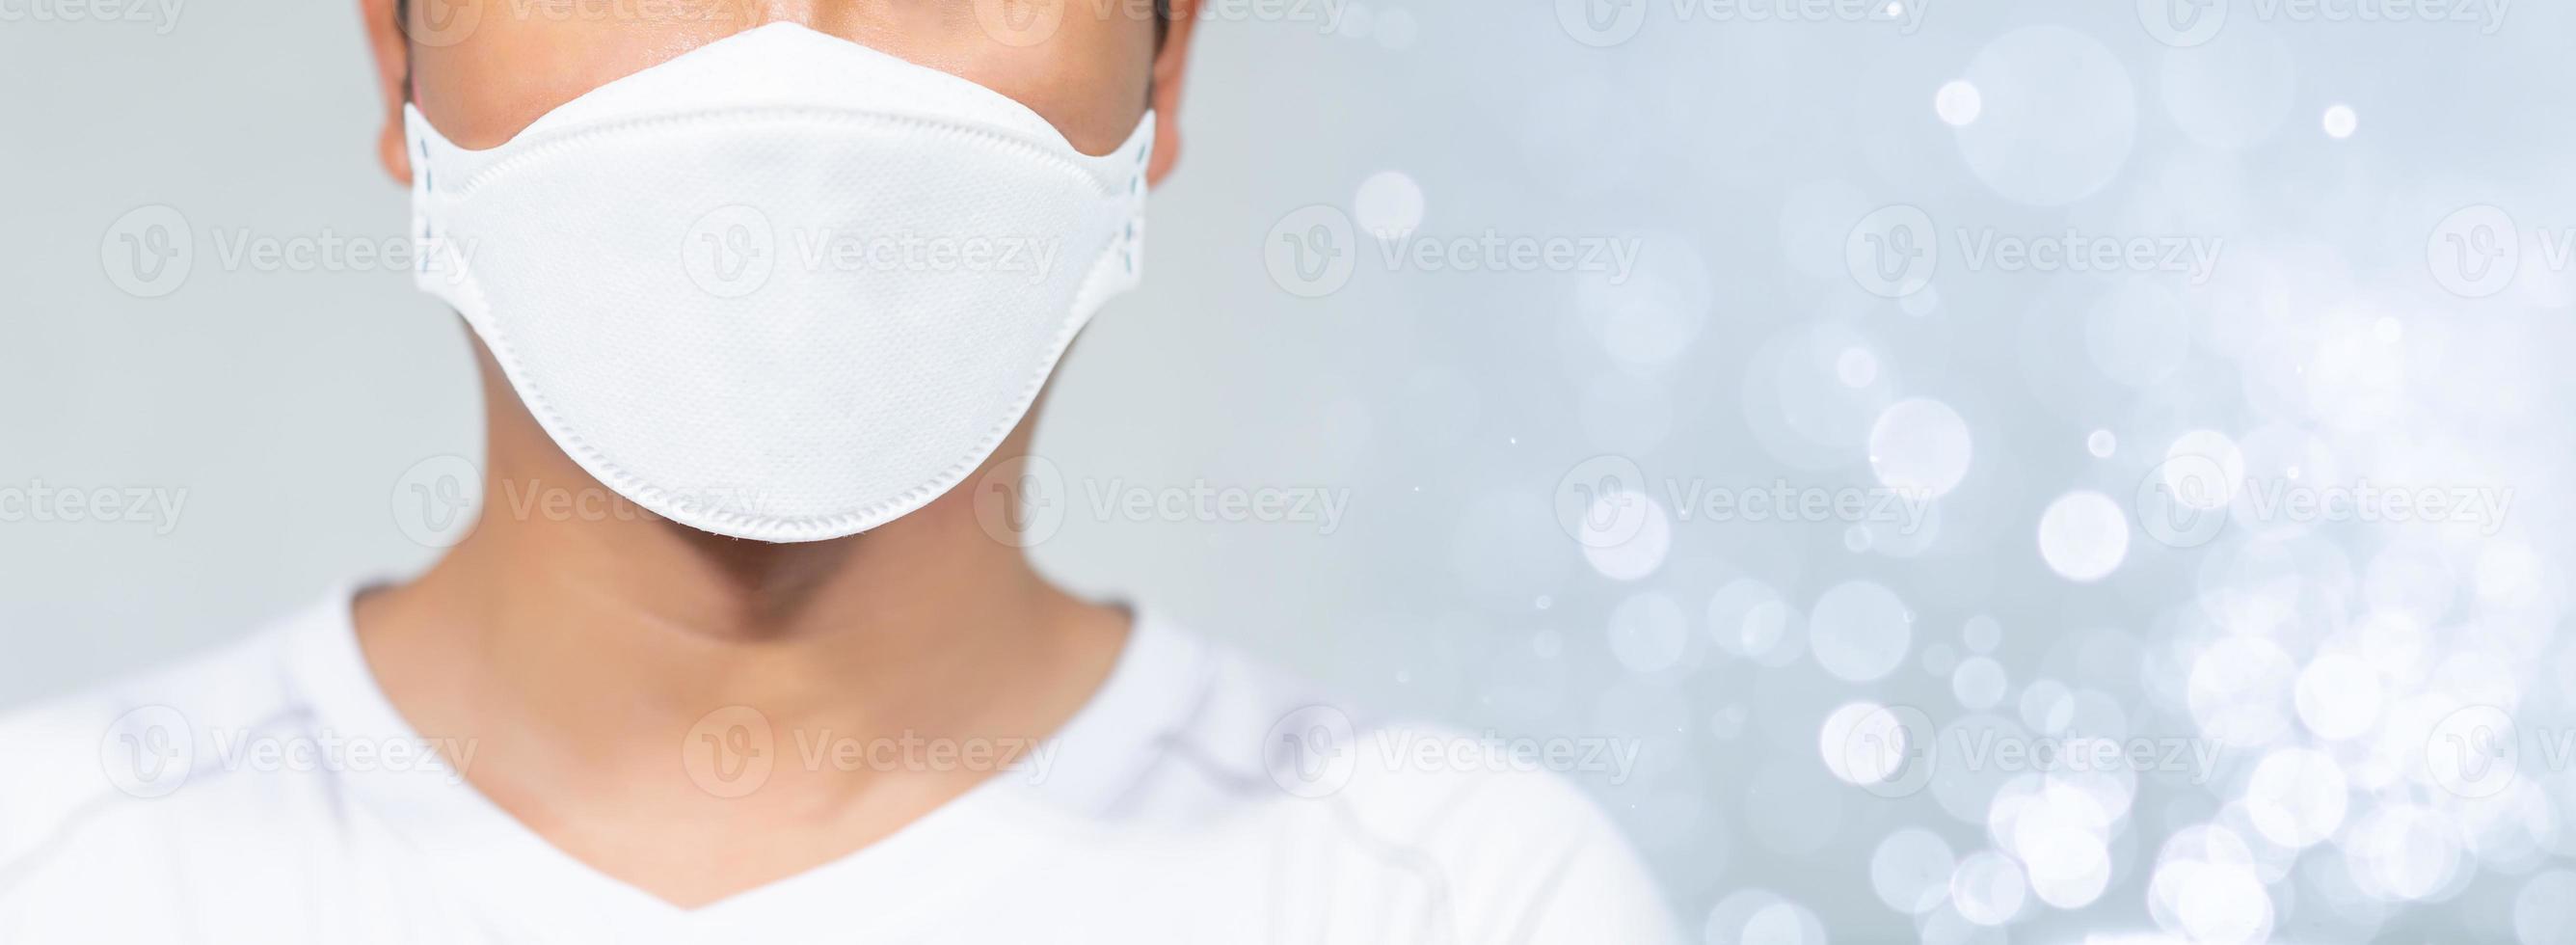 hommes portant des masques pour protéger le coronavirus covid-19 photo